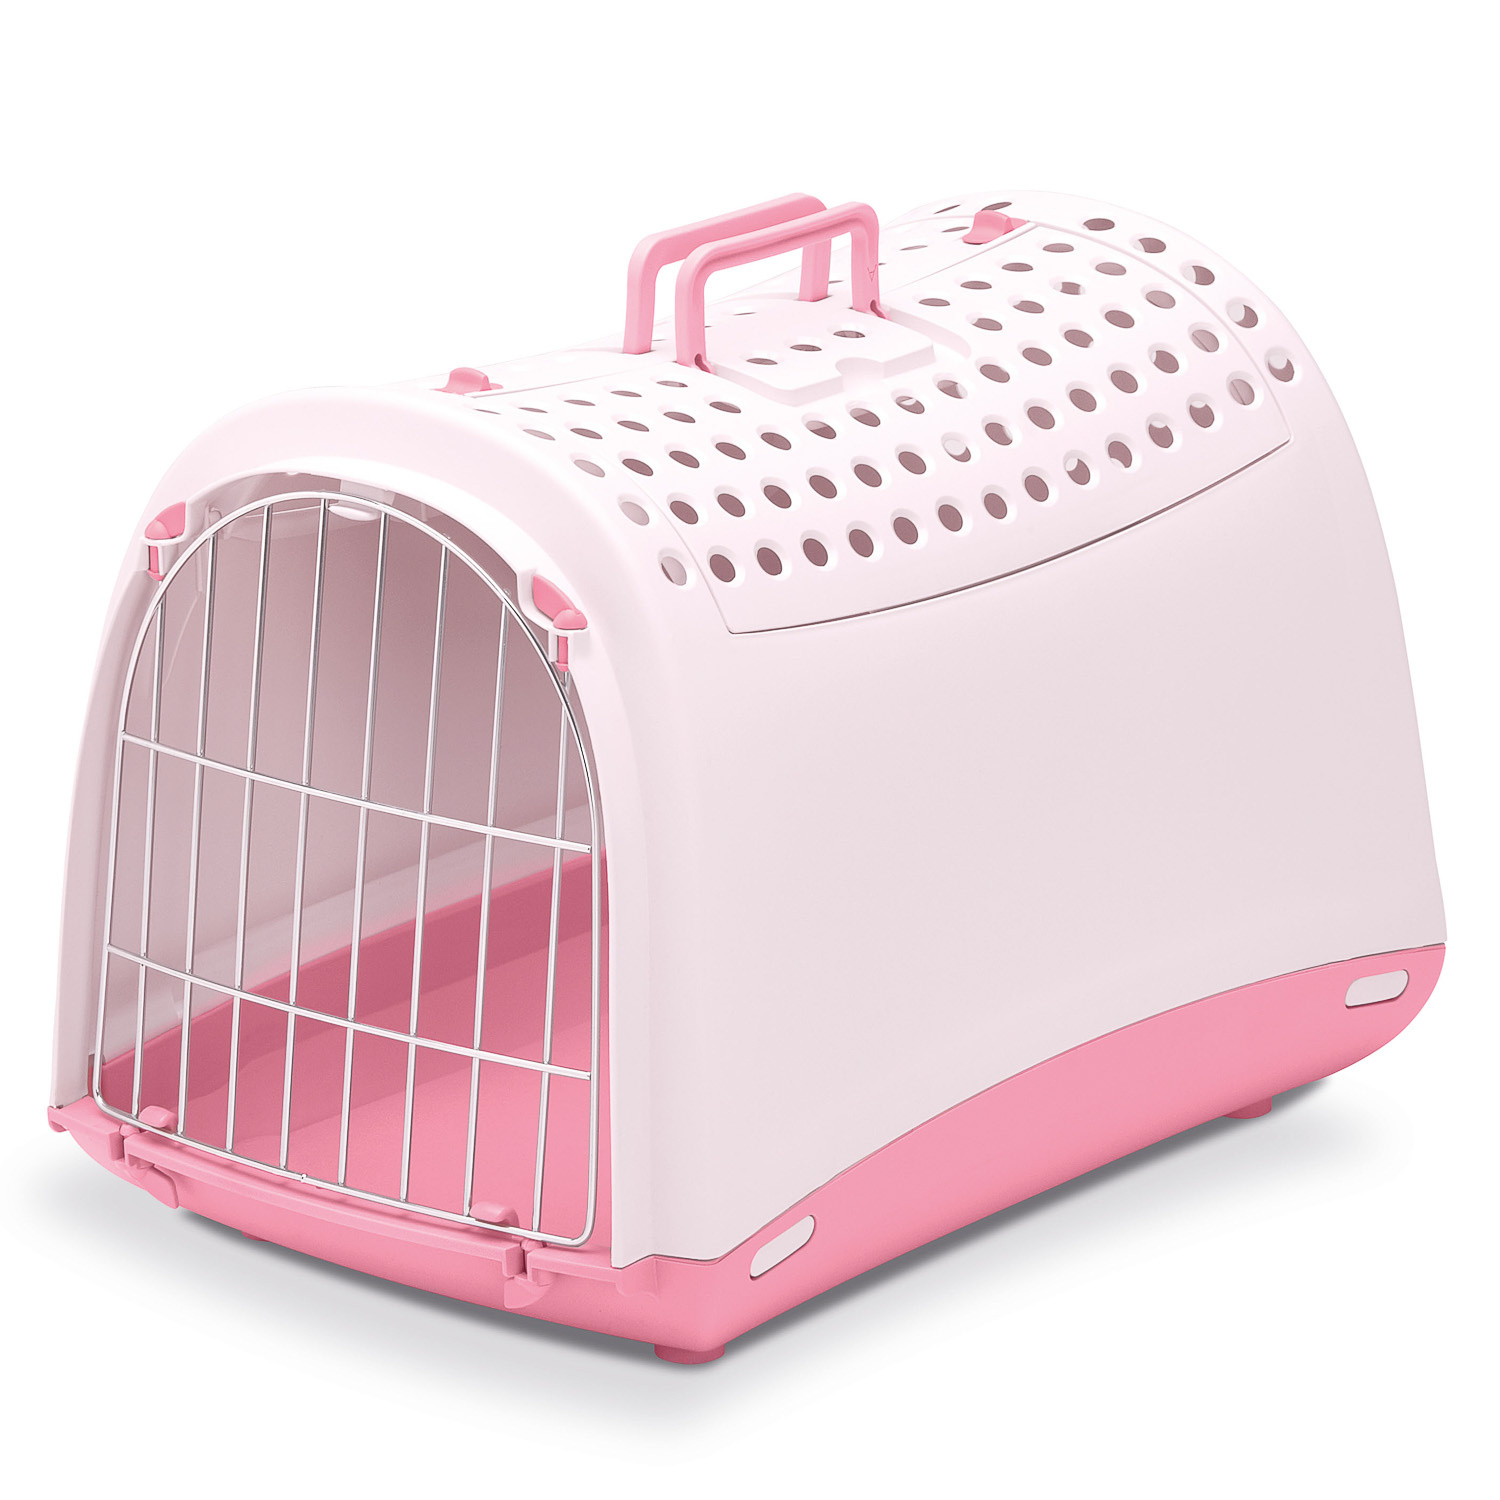 IMAC IMAC переноска для кошек и собак, нежно-розовый (1,37 кг) imac imac переноска для кошек и собак нежно розовый 1 37 кг